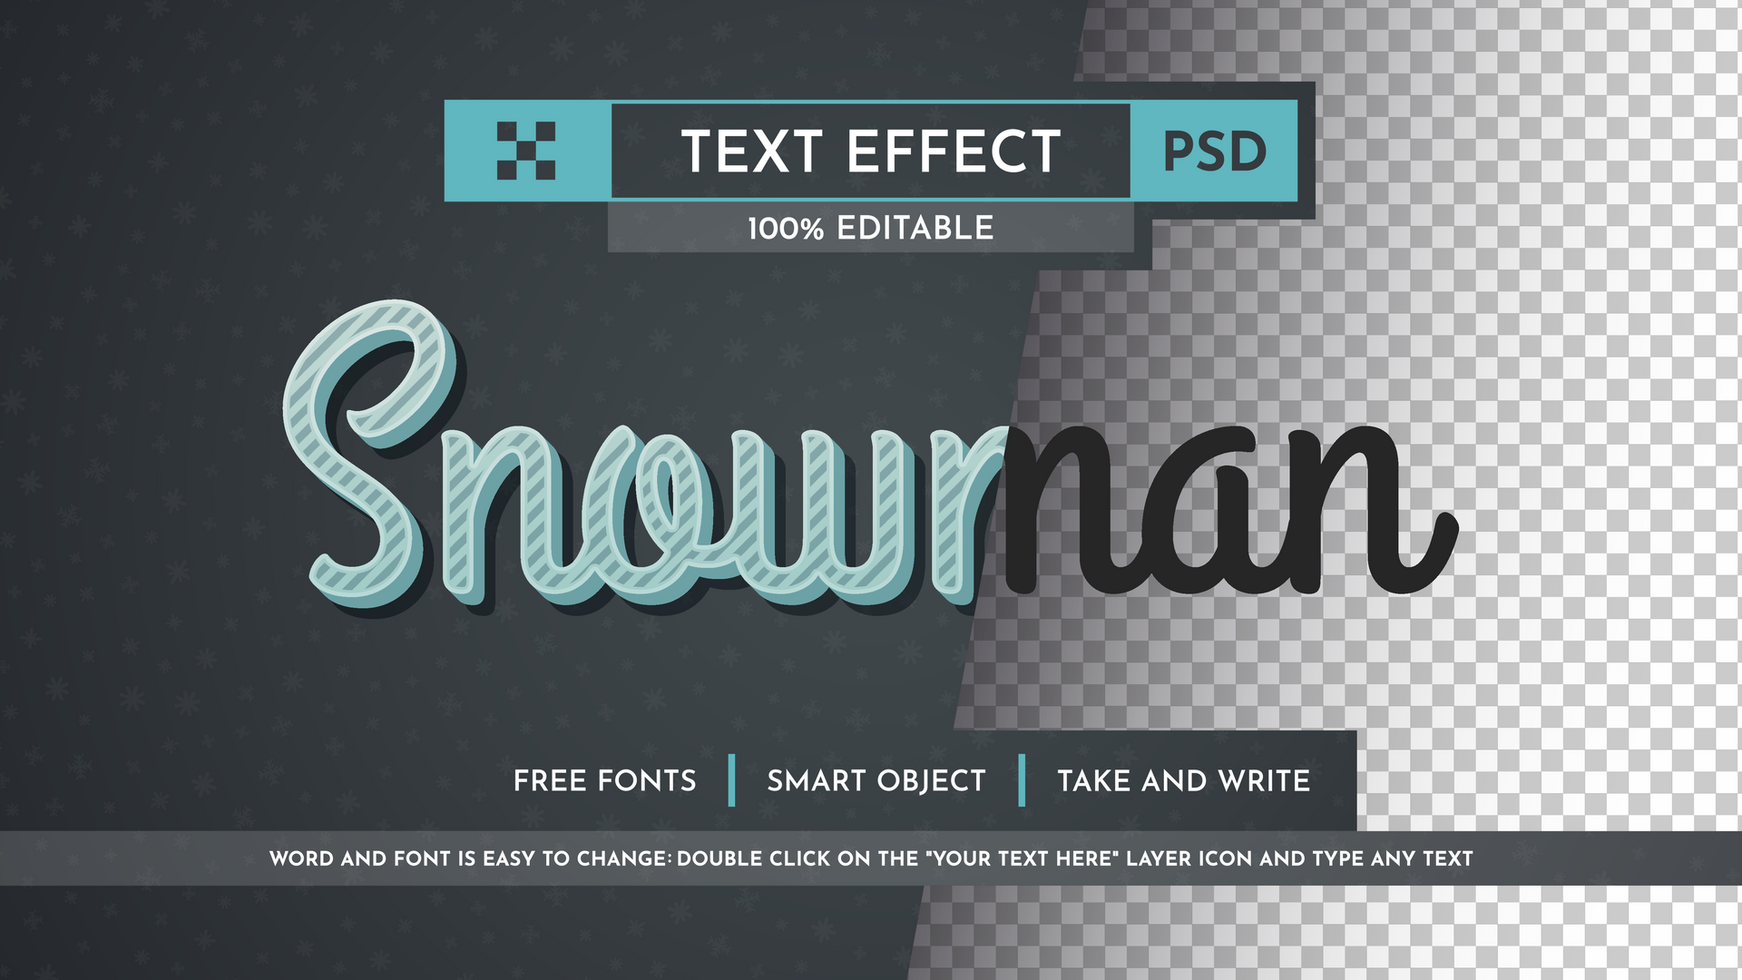 Snowman editable text effect psd